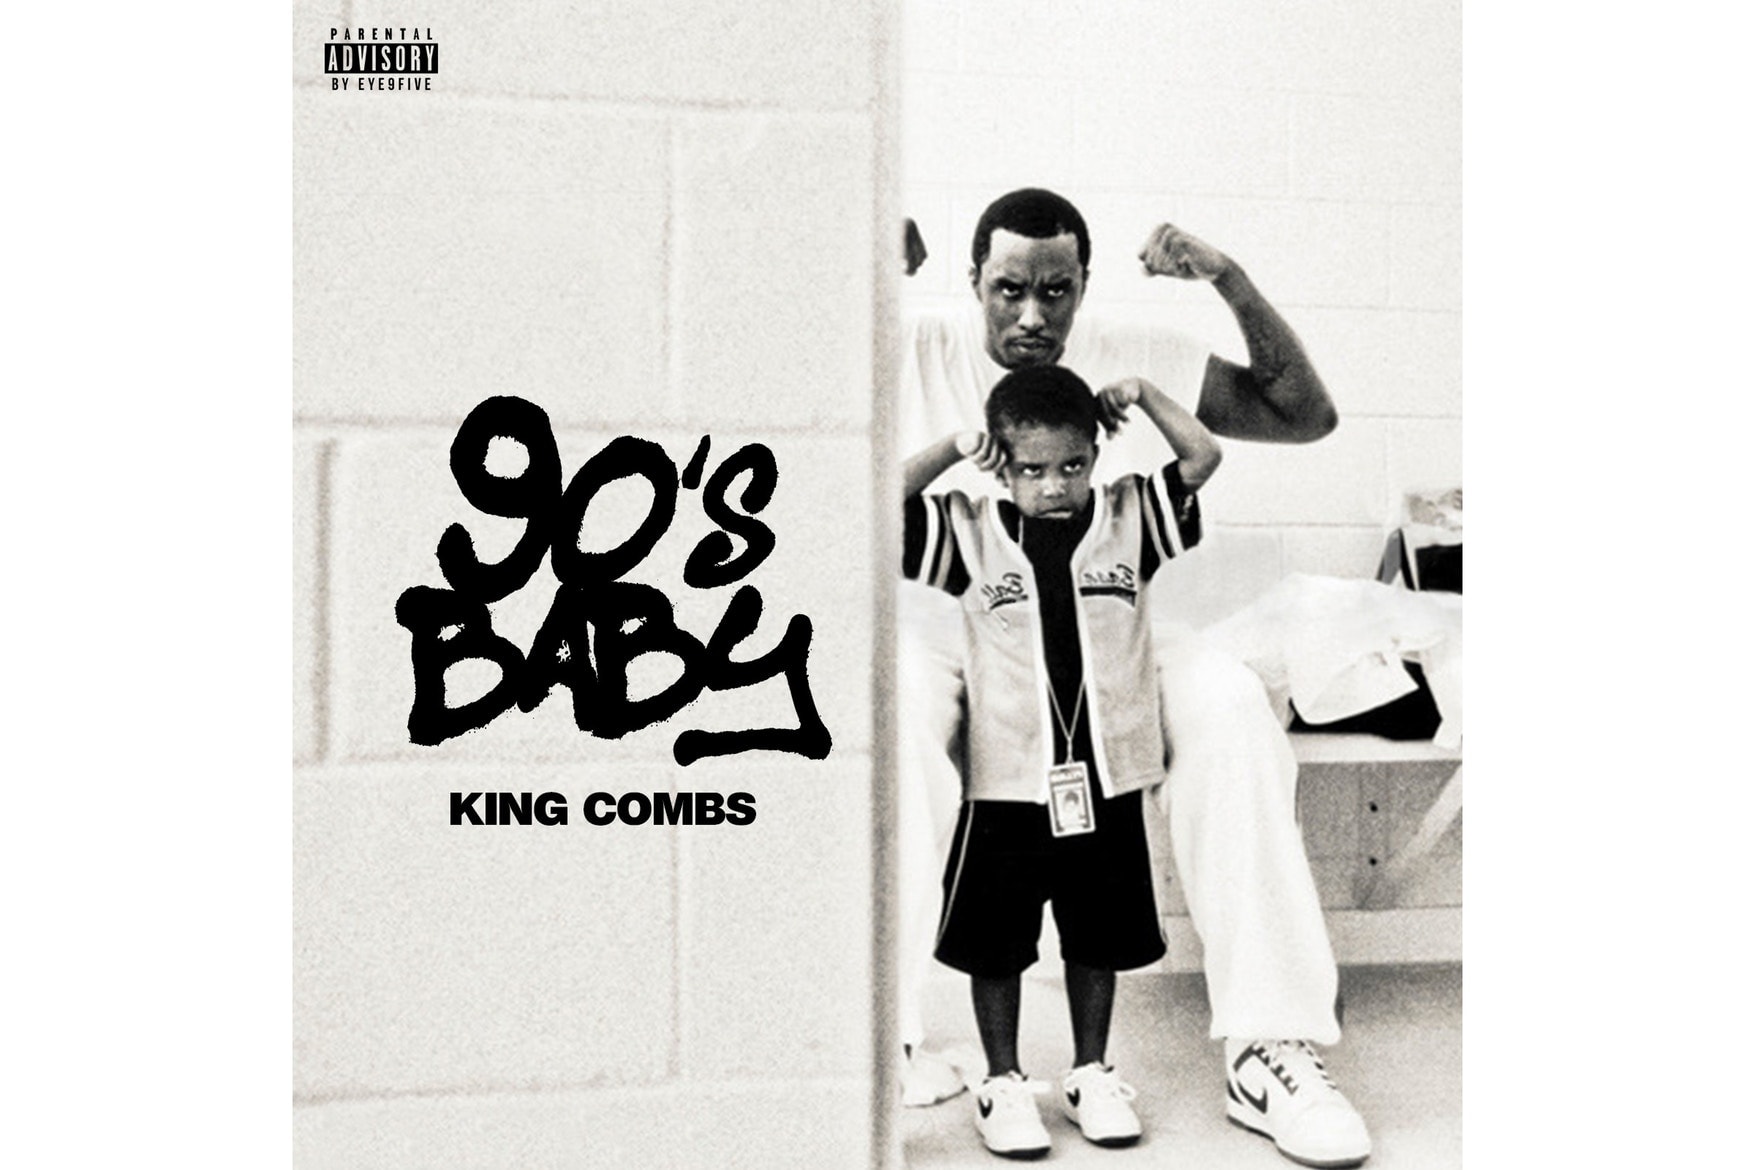 Diddy の息子 King Combs が『90's Baby』と題した新作ミックステープを発表  ディディ キング・コムズ ショーン コムズ